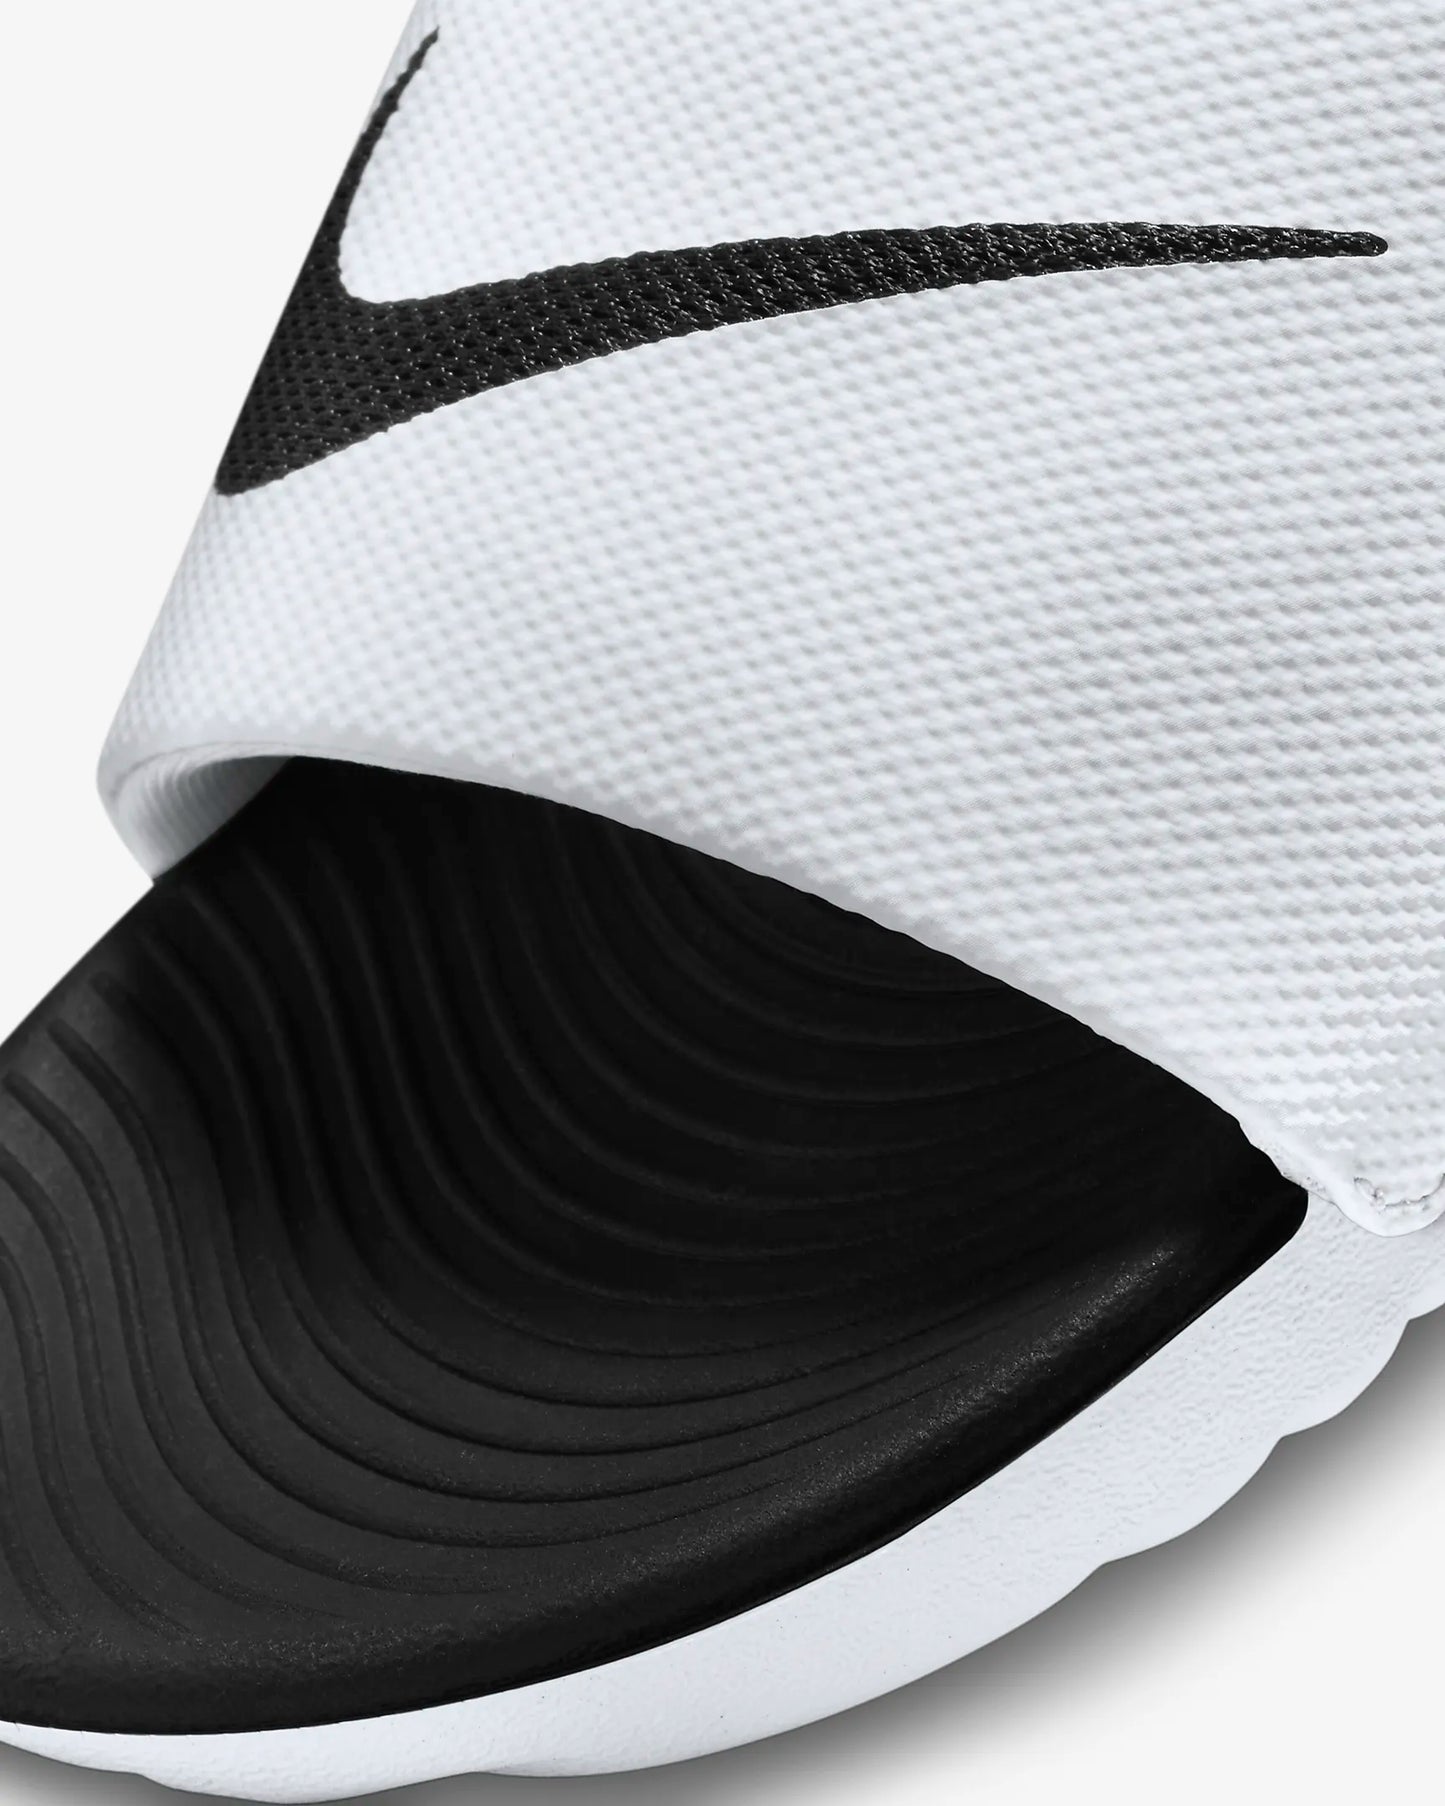 .Nike Kawa Kids Slides White/Black - WK - (819352-100) - R2L16